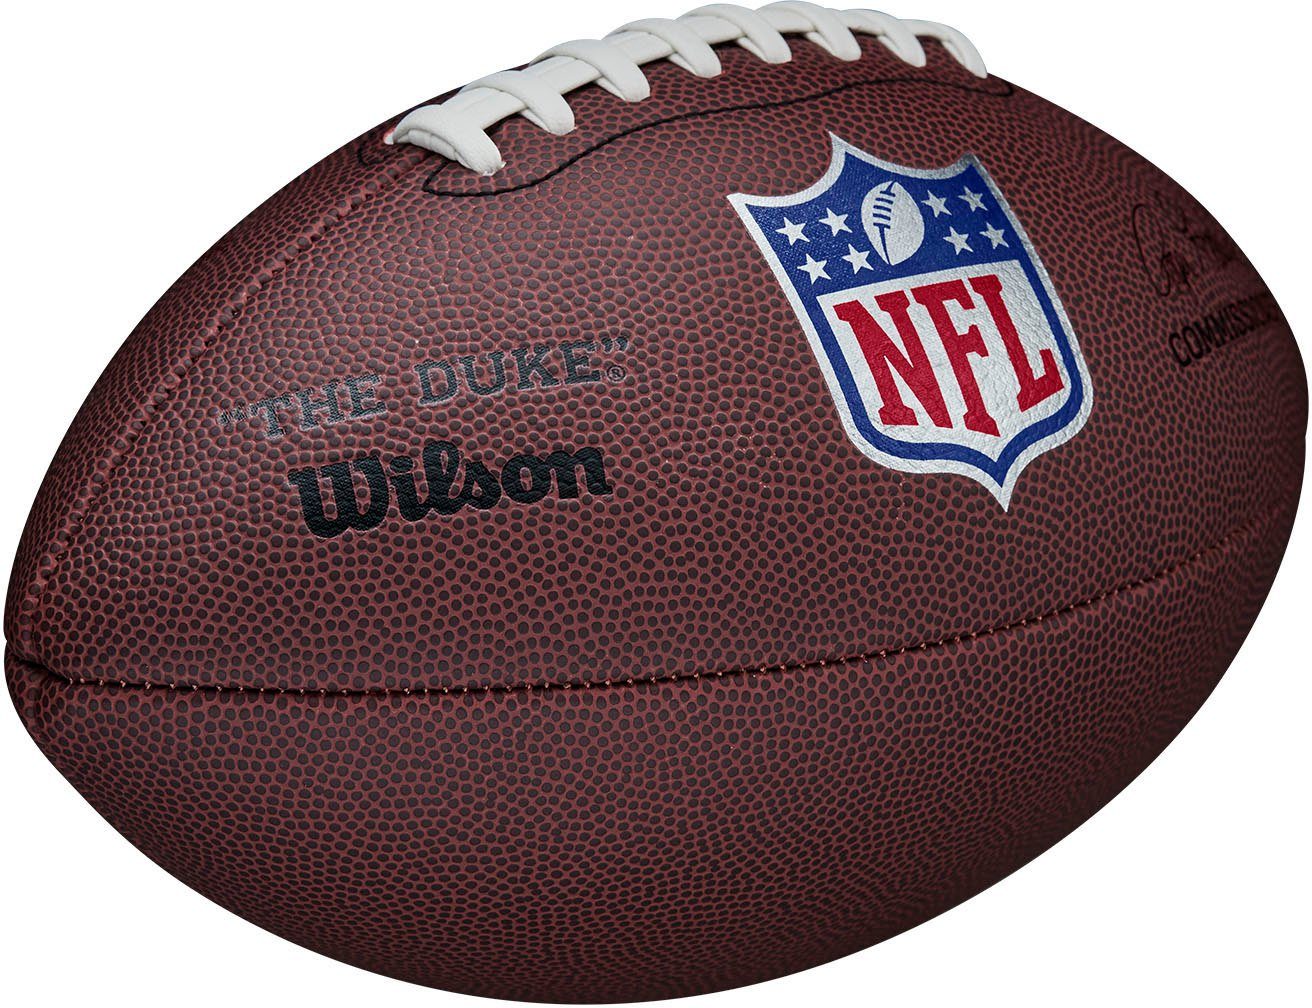 Wilson Football REPLICA “DUKE” NFL